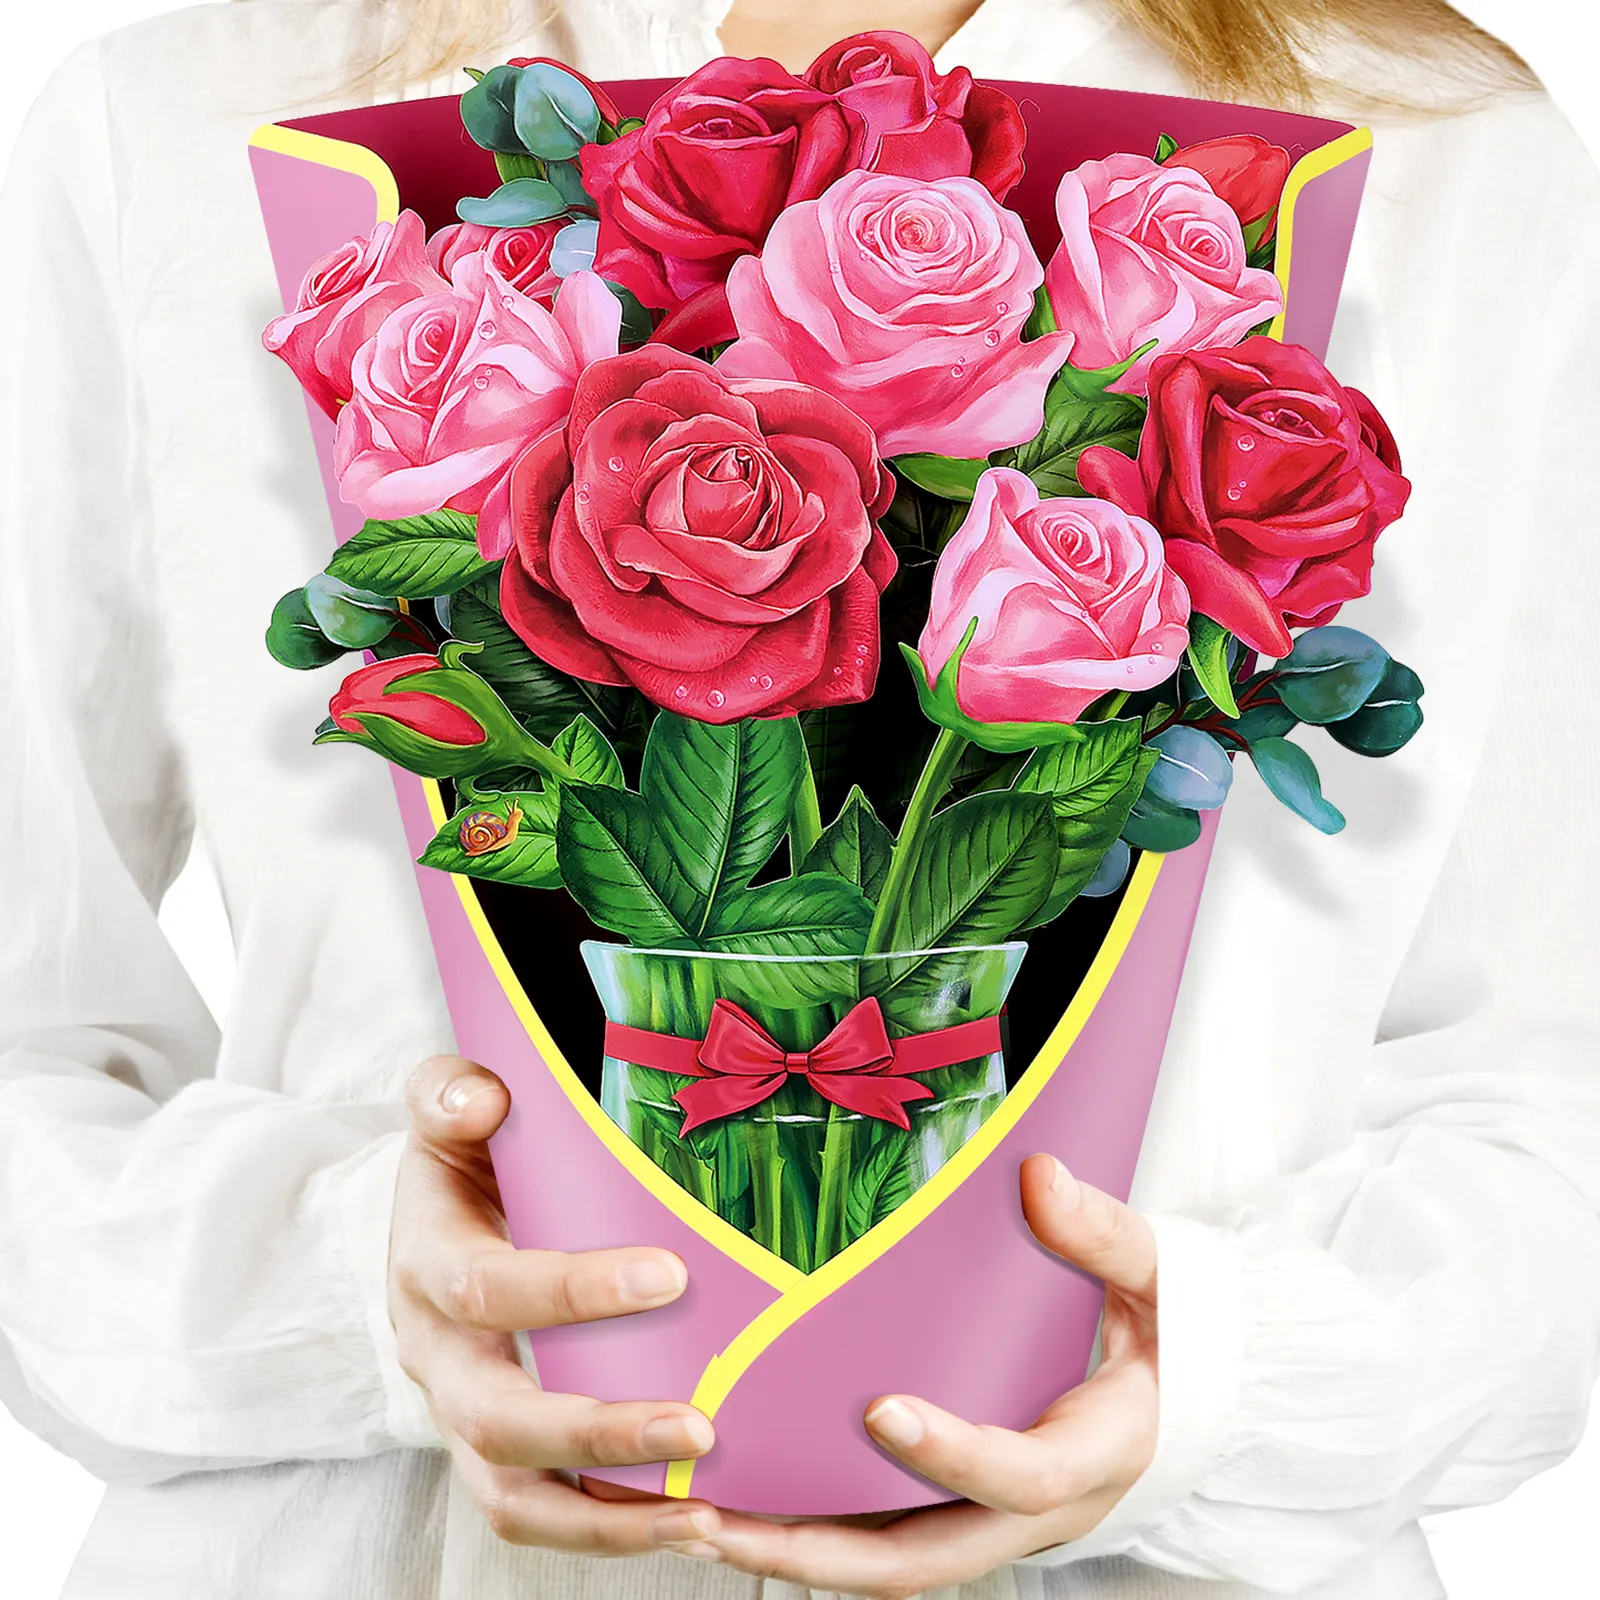 Kartu Ucapan buket mawar bunga Pop Up kertas berkualitas tinggi hadiah Hari Valentine kreatif desain asli